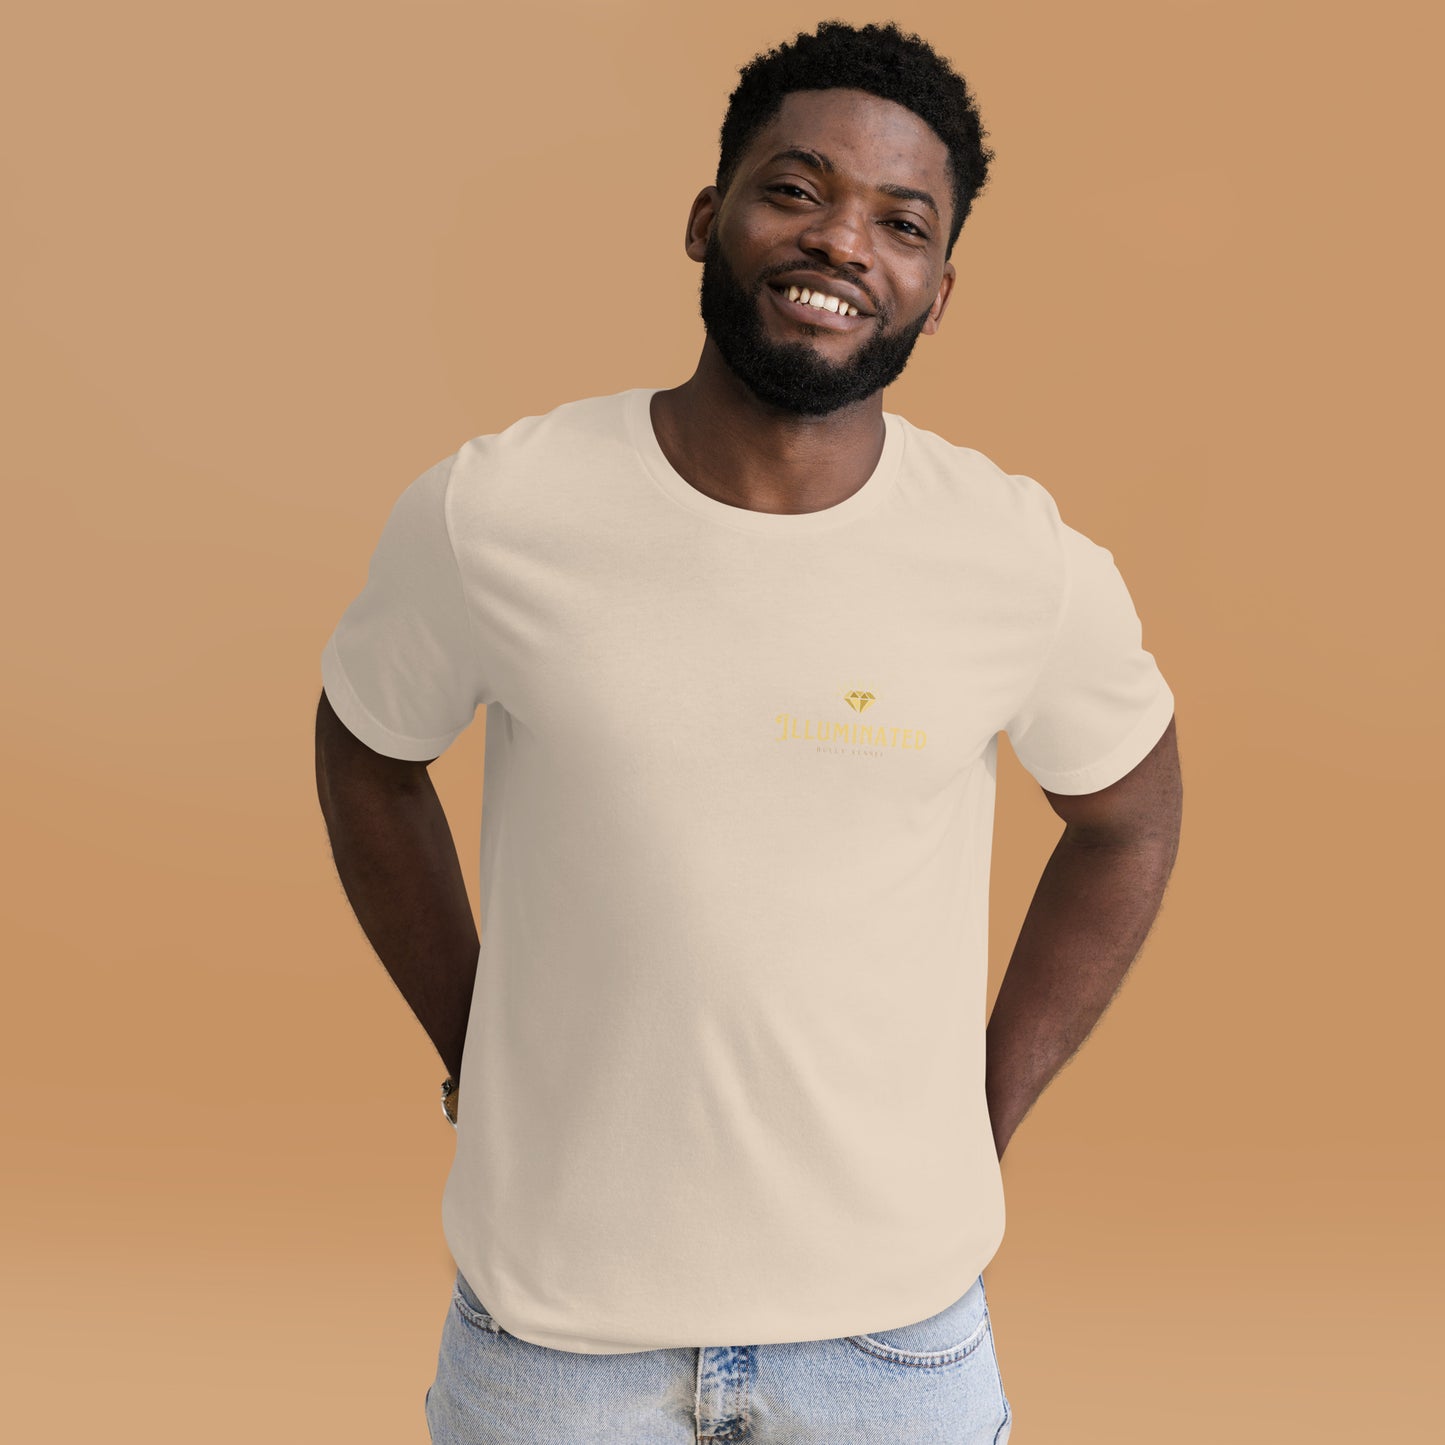 Gold Illuminated Unisex t-shirt